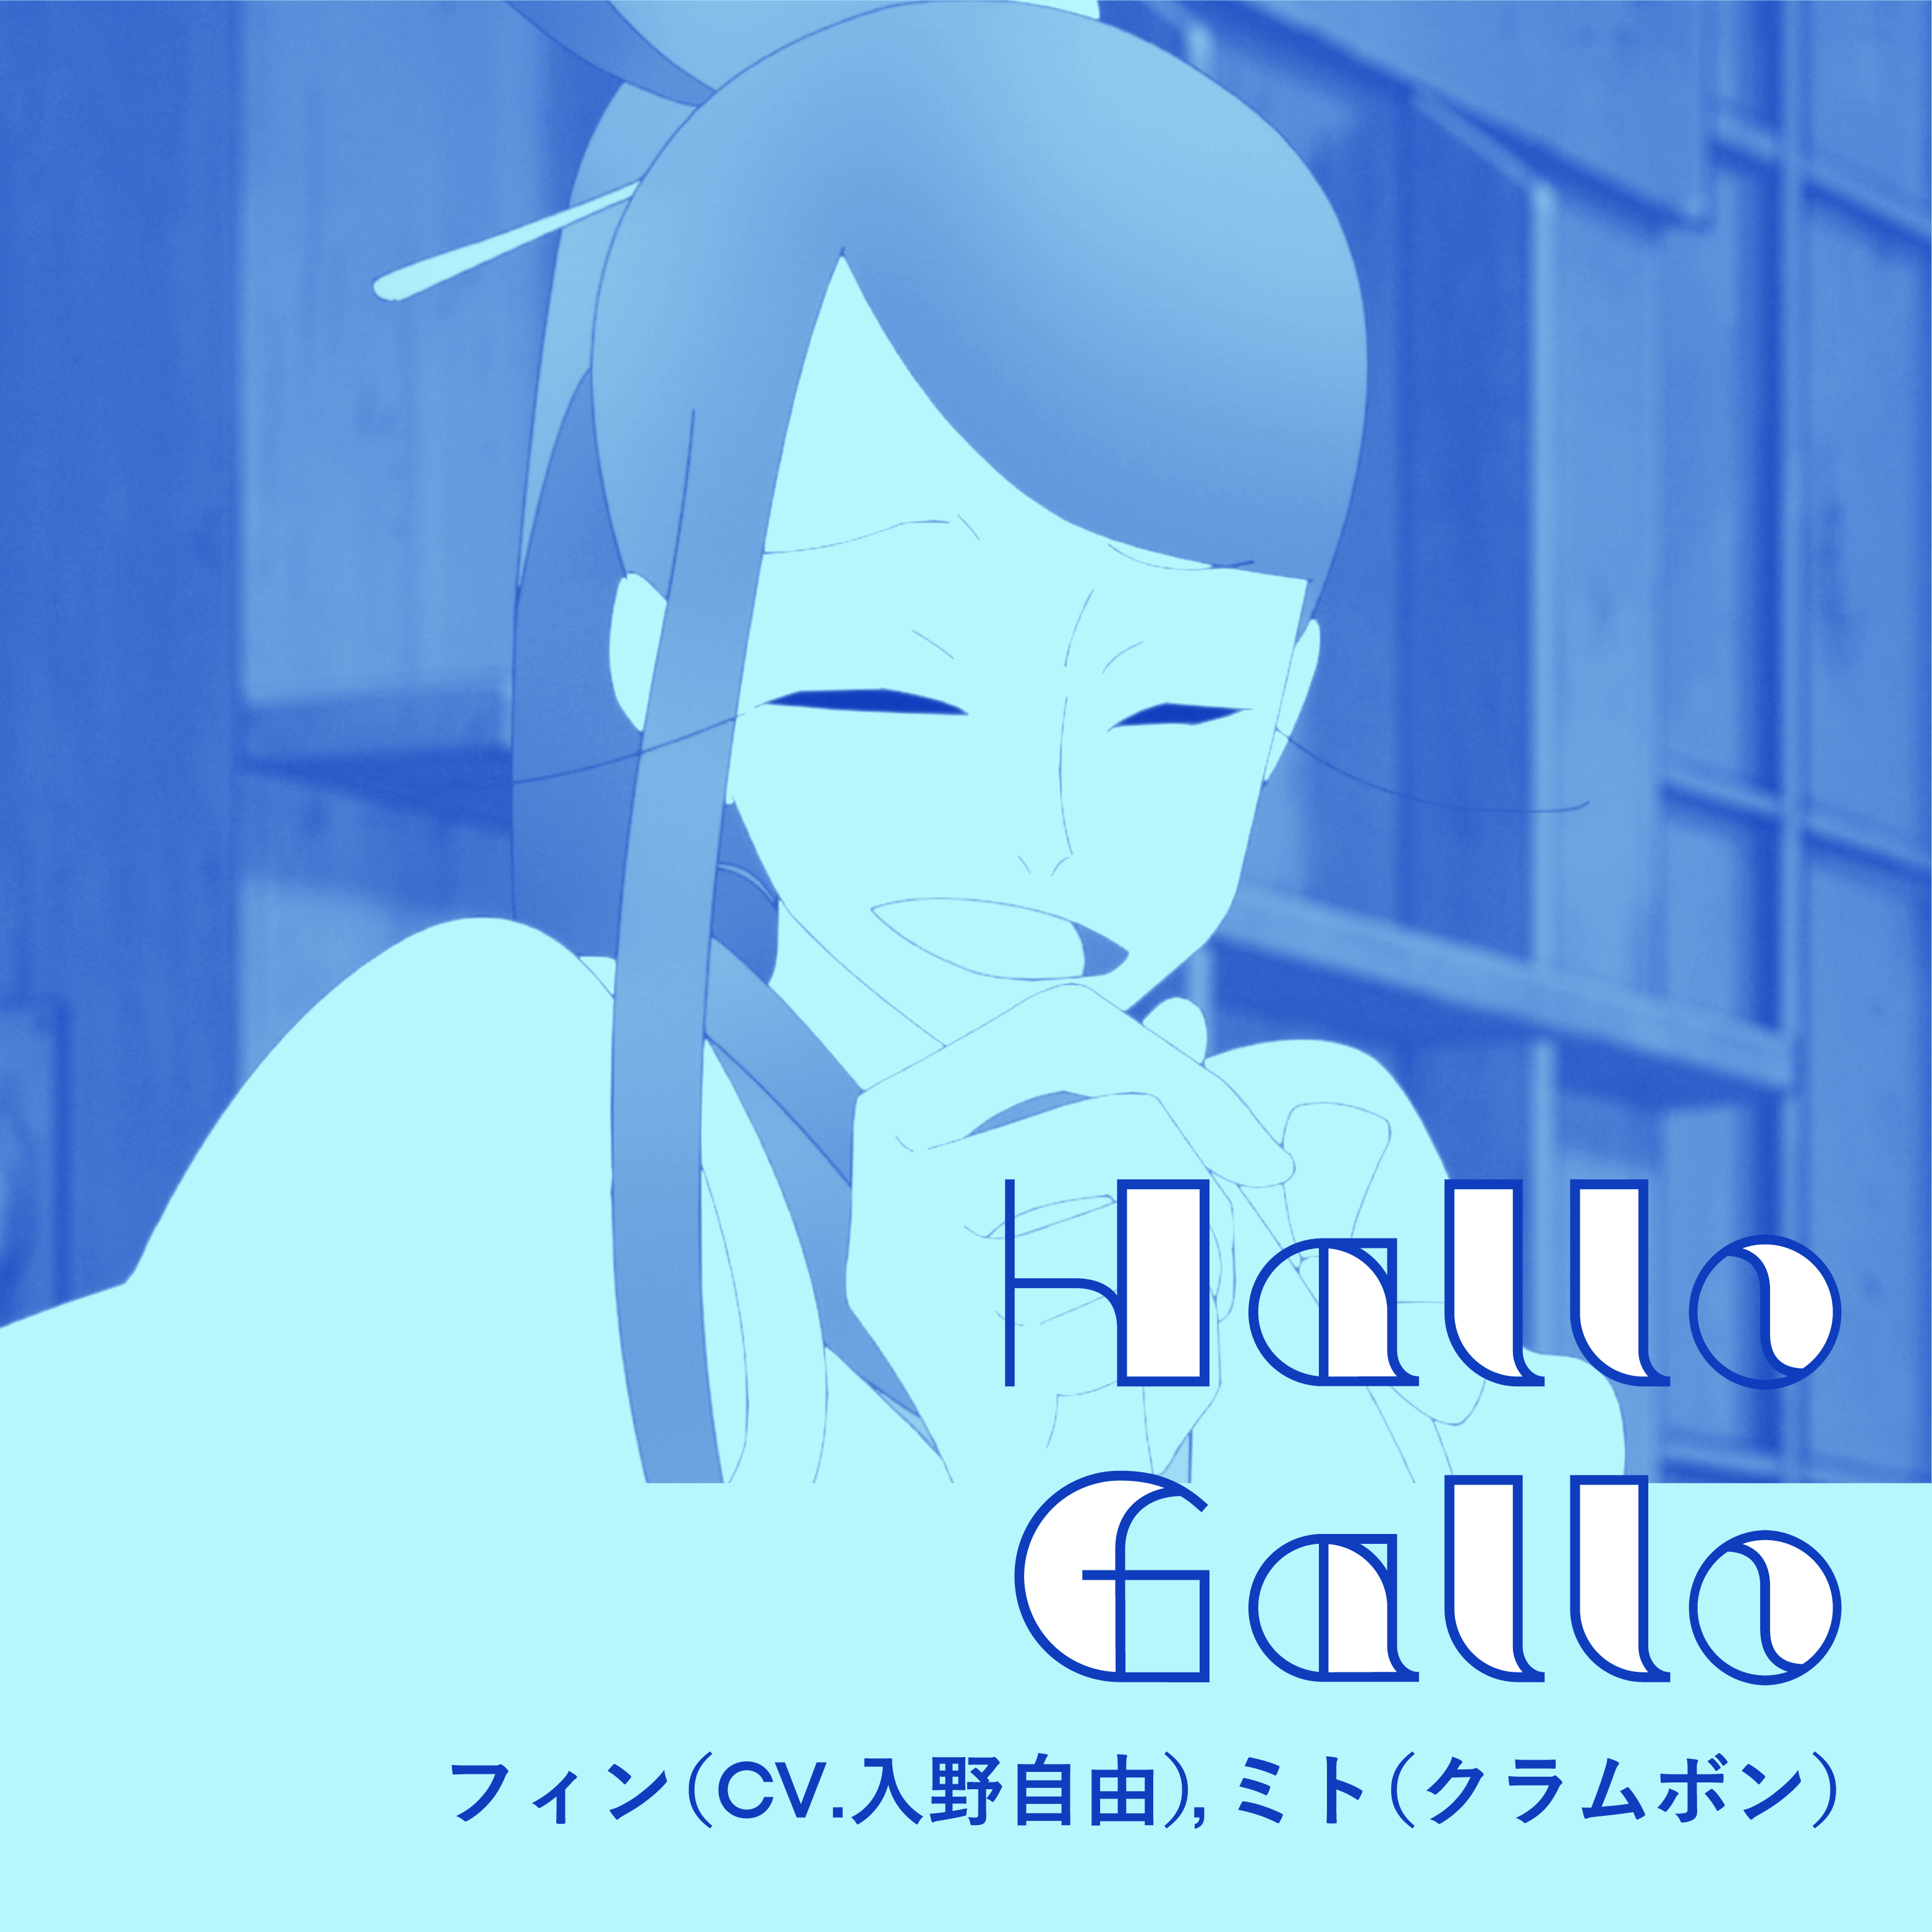 【ユーレイデコ】コラボレーションソング#09「Hallo Gallo」配信ジャケットデザイン.png